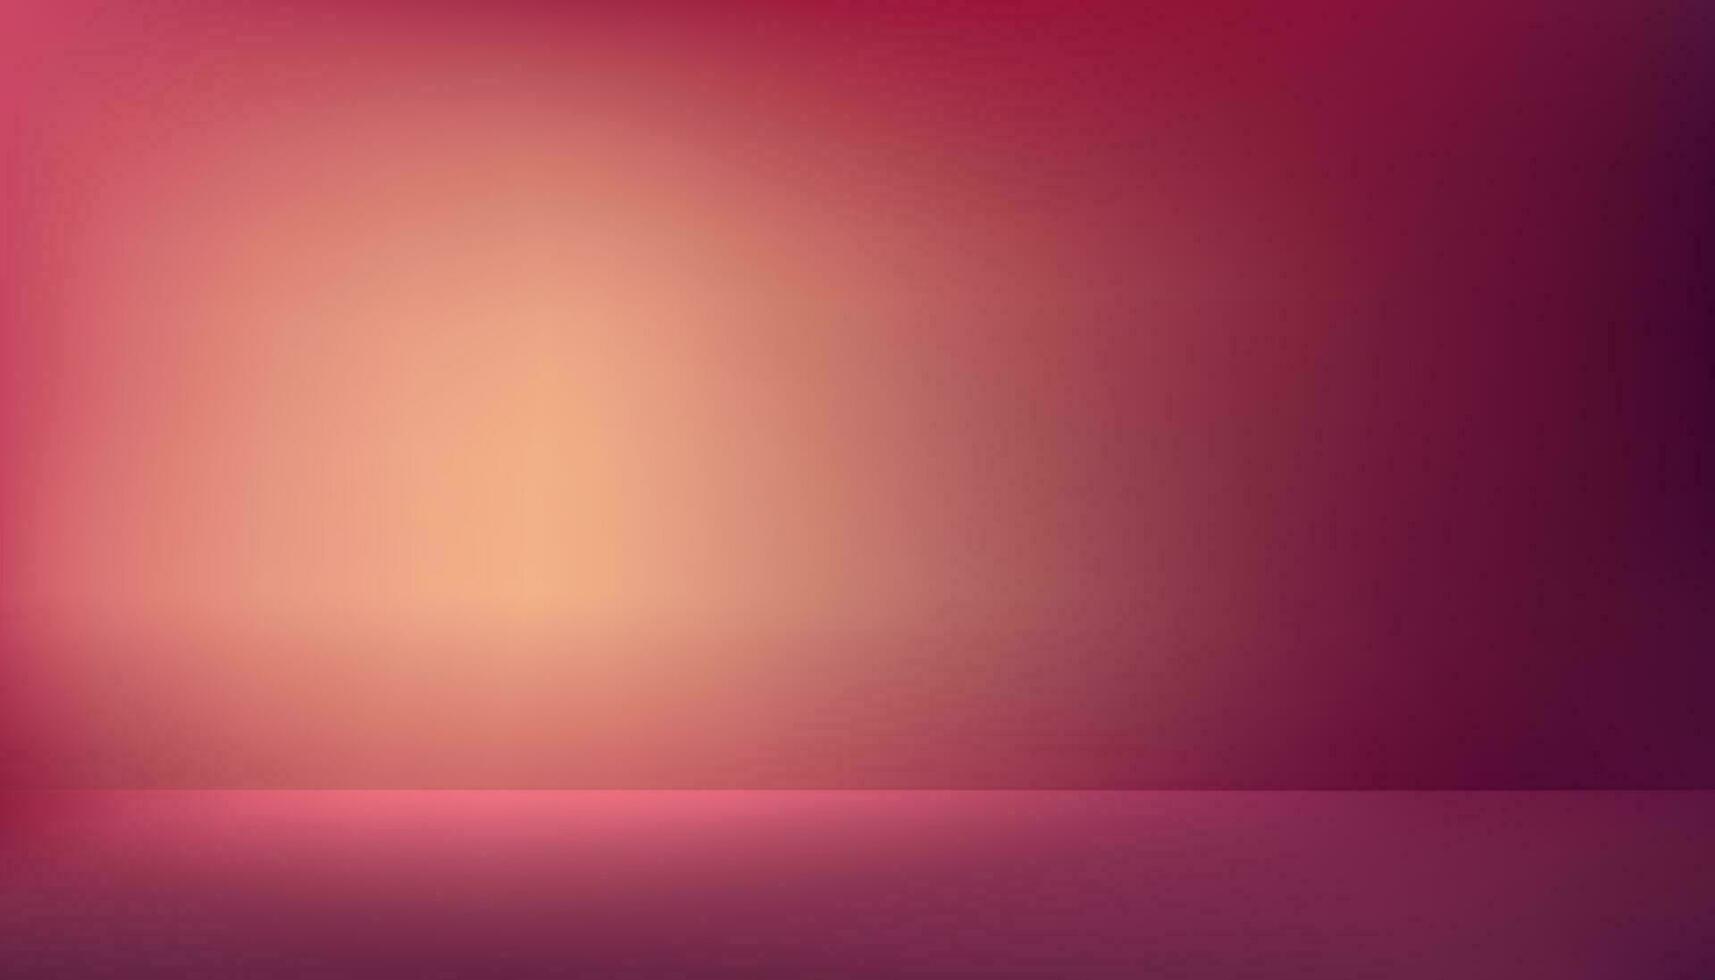 studio bakgrund, tom rum med trogen neon på vägg och golv.3d studio visa podium med suddigt rosa, violett, orange mall.vektor baner färgrik för produkt framtida cyberrymden begrepp vektor